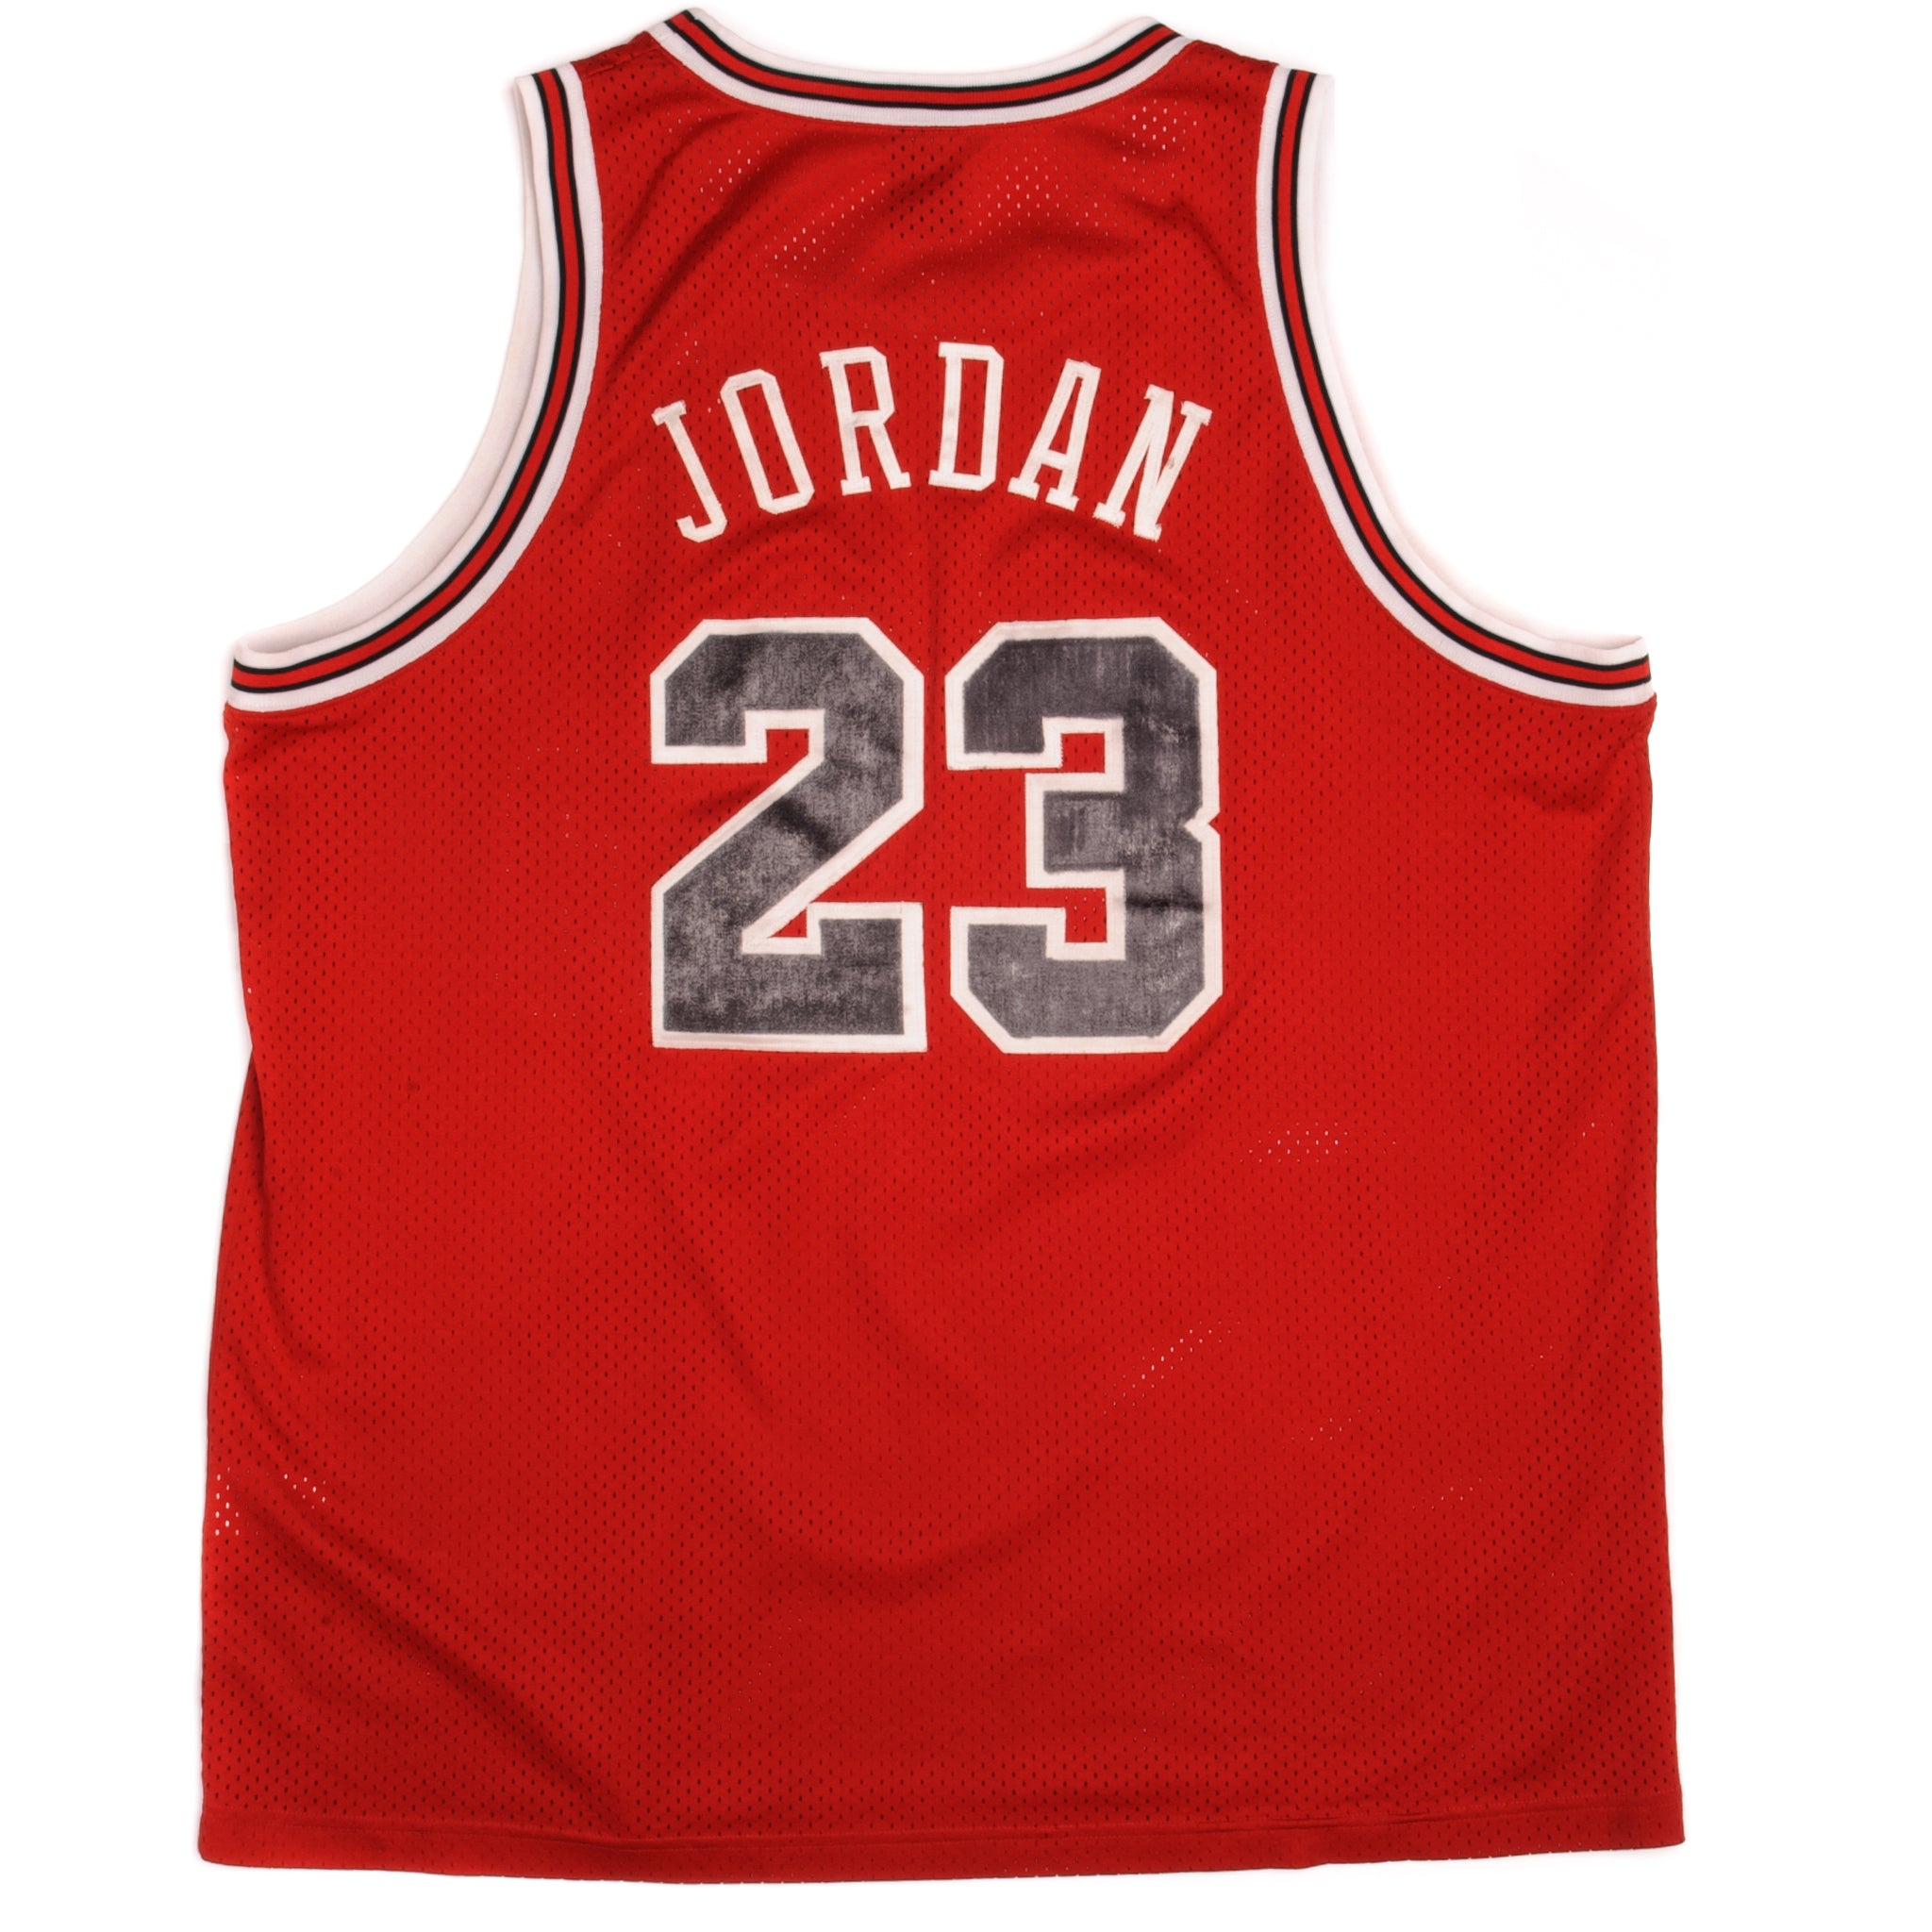 NBA Jerseys & Fangear, Nike & Jordan